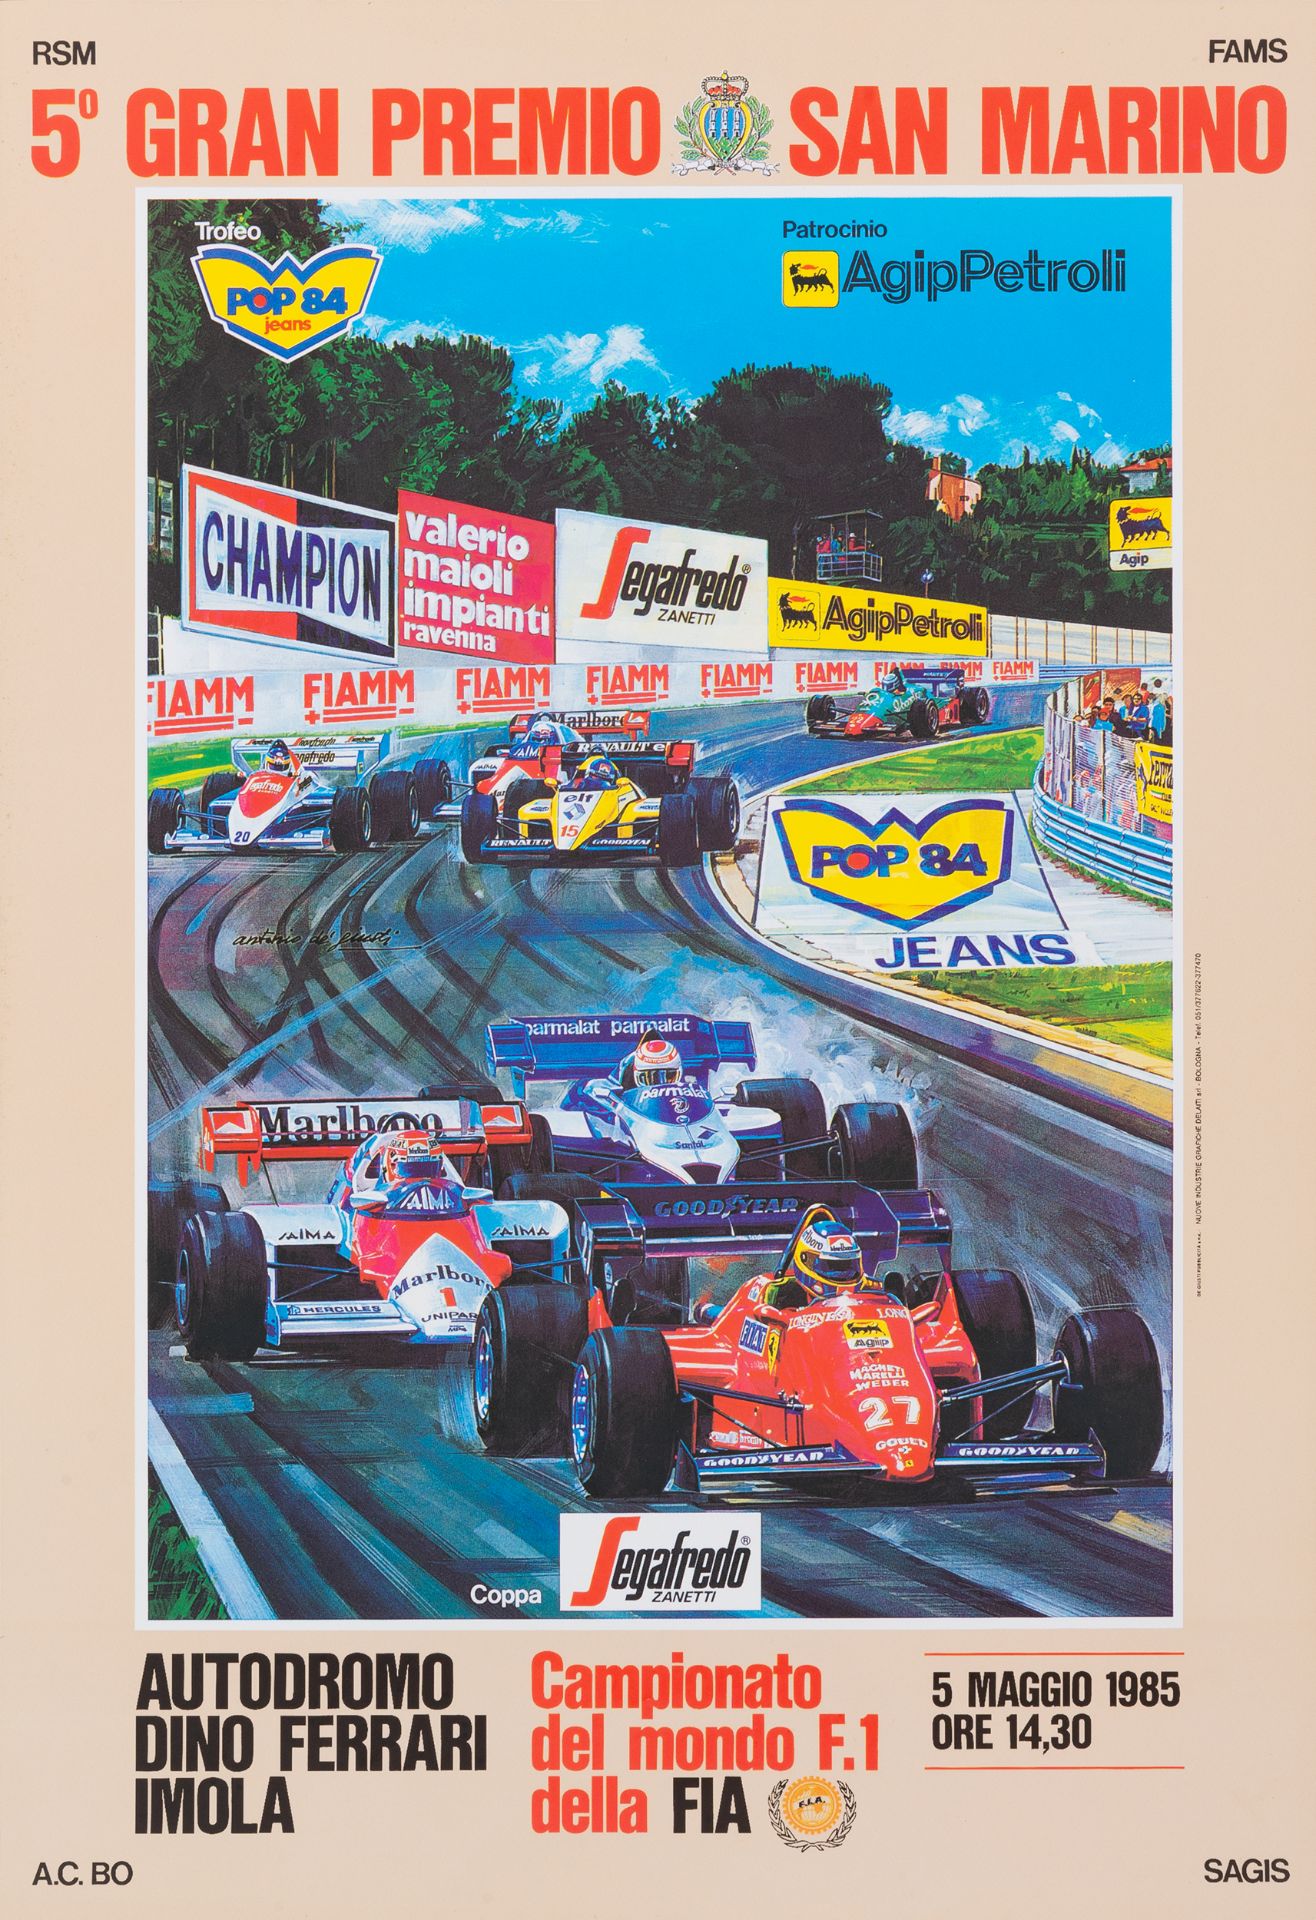 San Marino Gran Prix [2] - Image 2 of 2